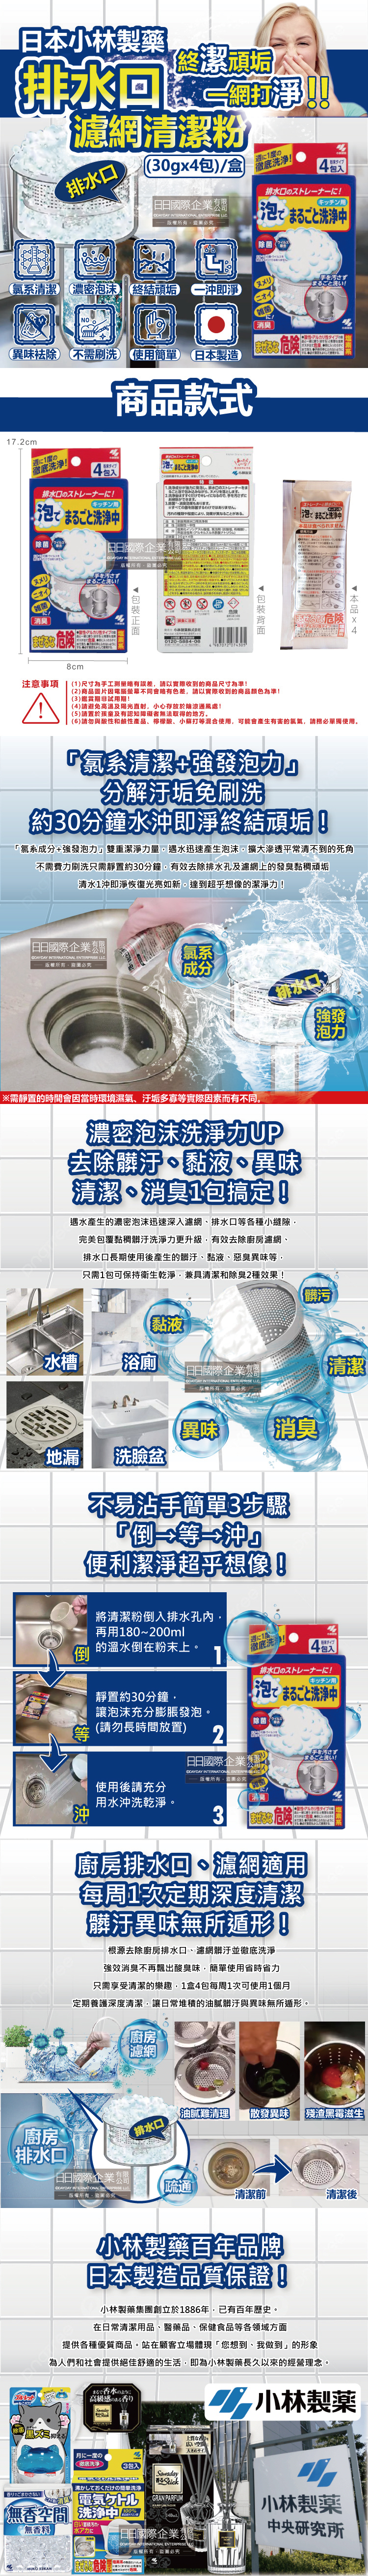 (清潔-管道)日本小林製藥-廚房排水口濾網發泡清潔粉(30gx4包)盒裝介紹圖